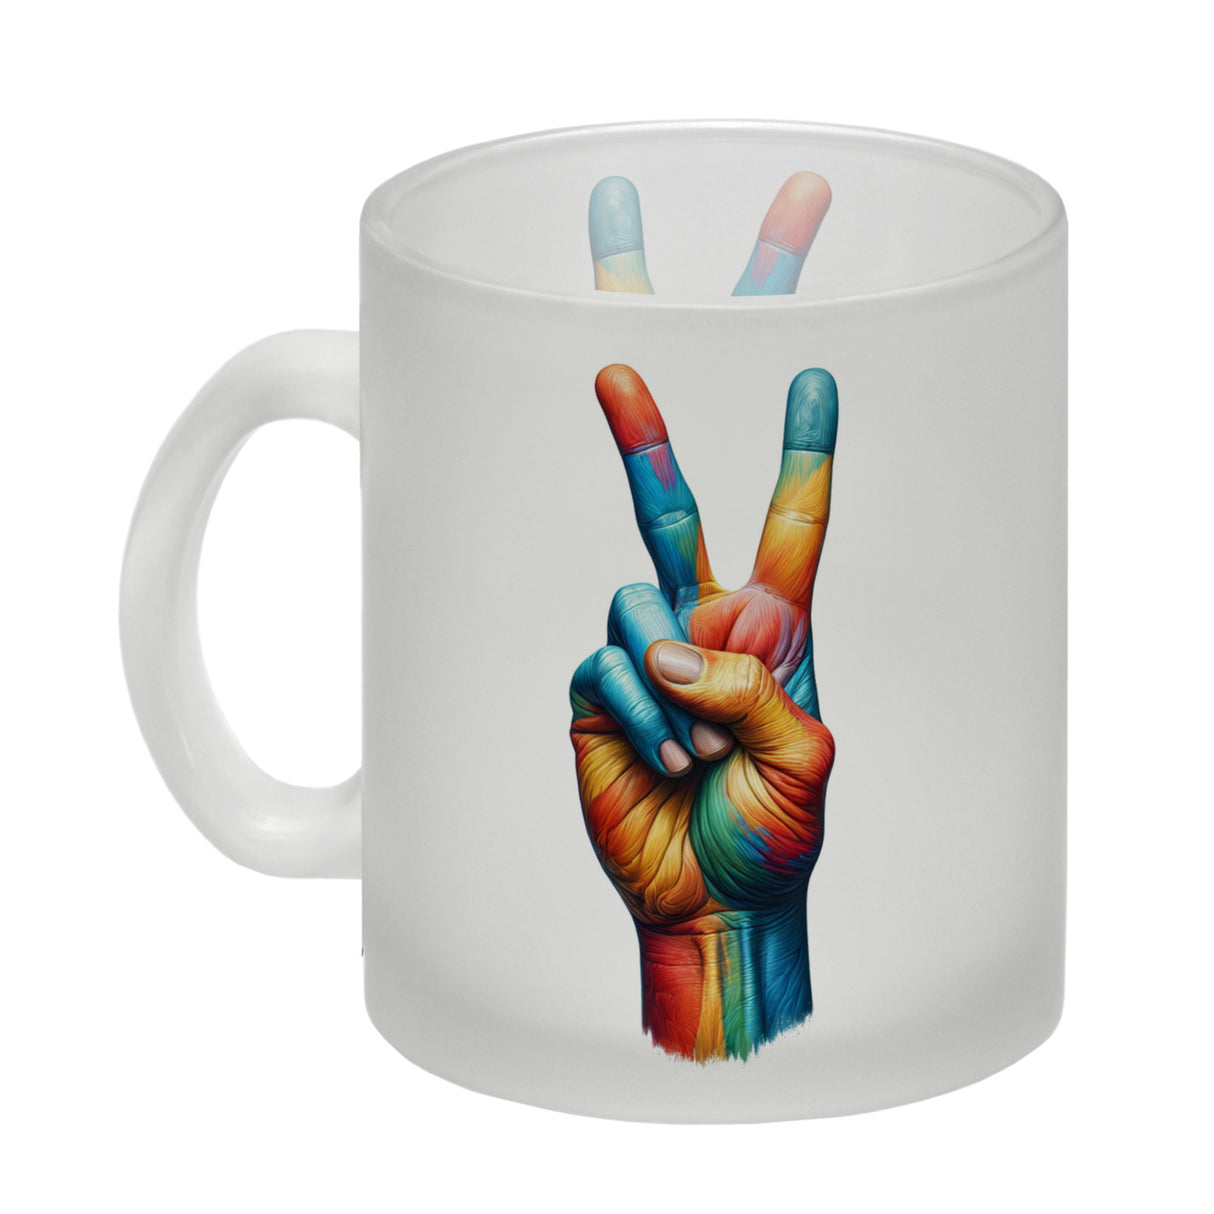 Peacezeichen in regenbogenfarben Kaffeebecher